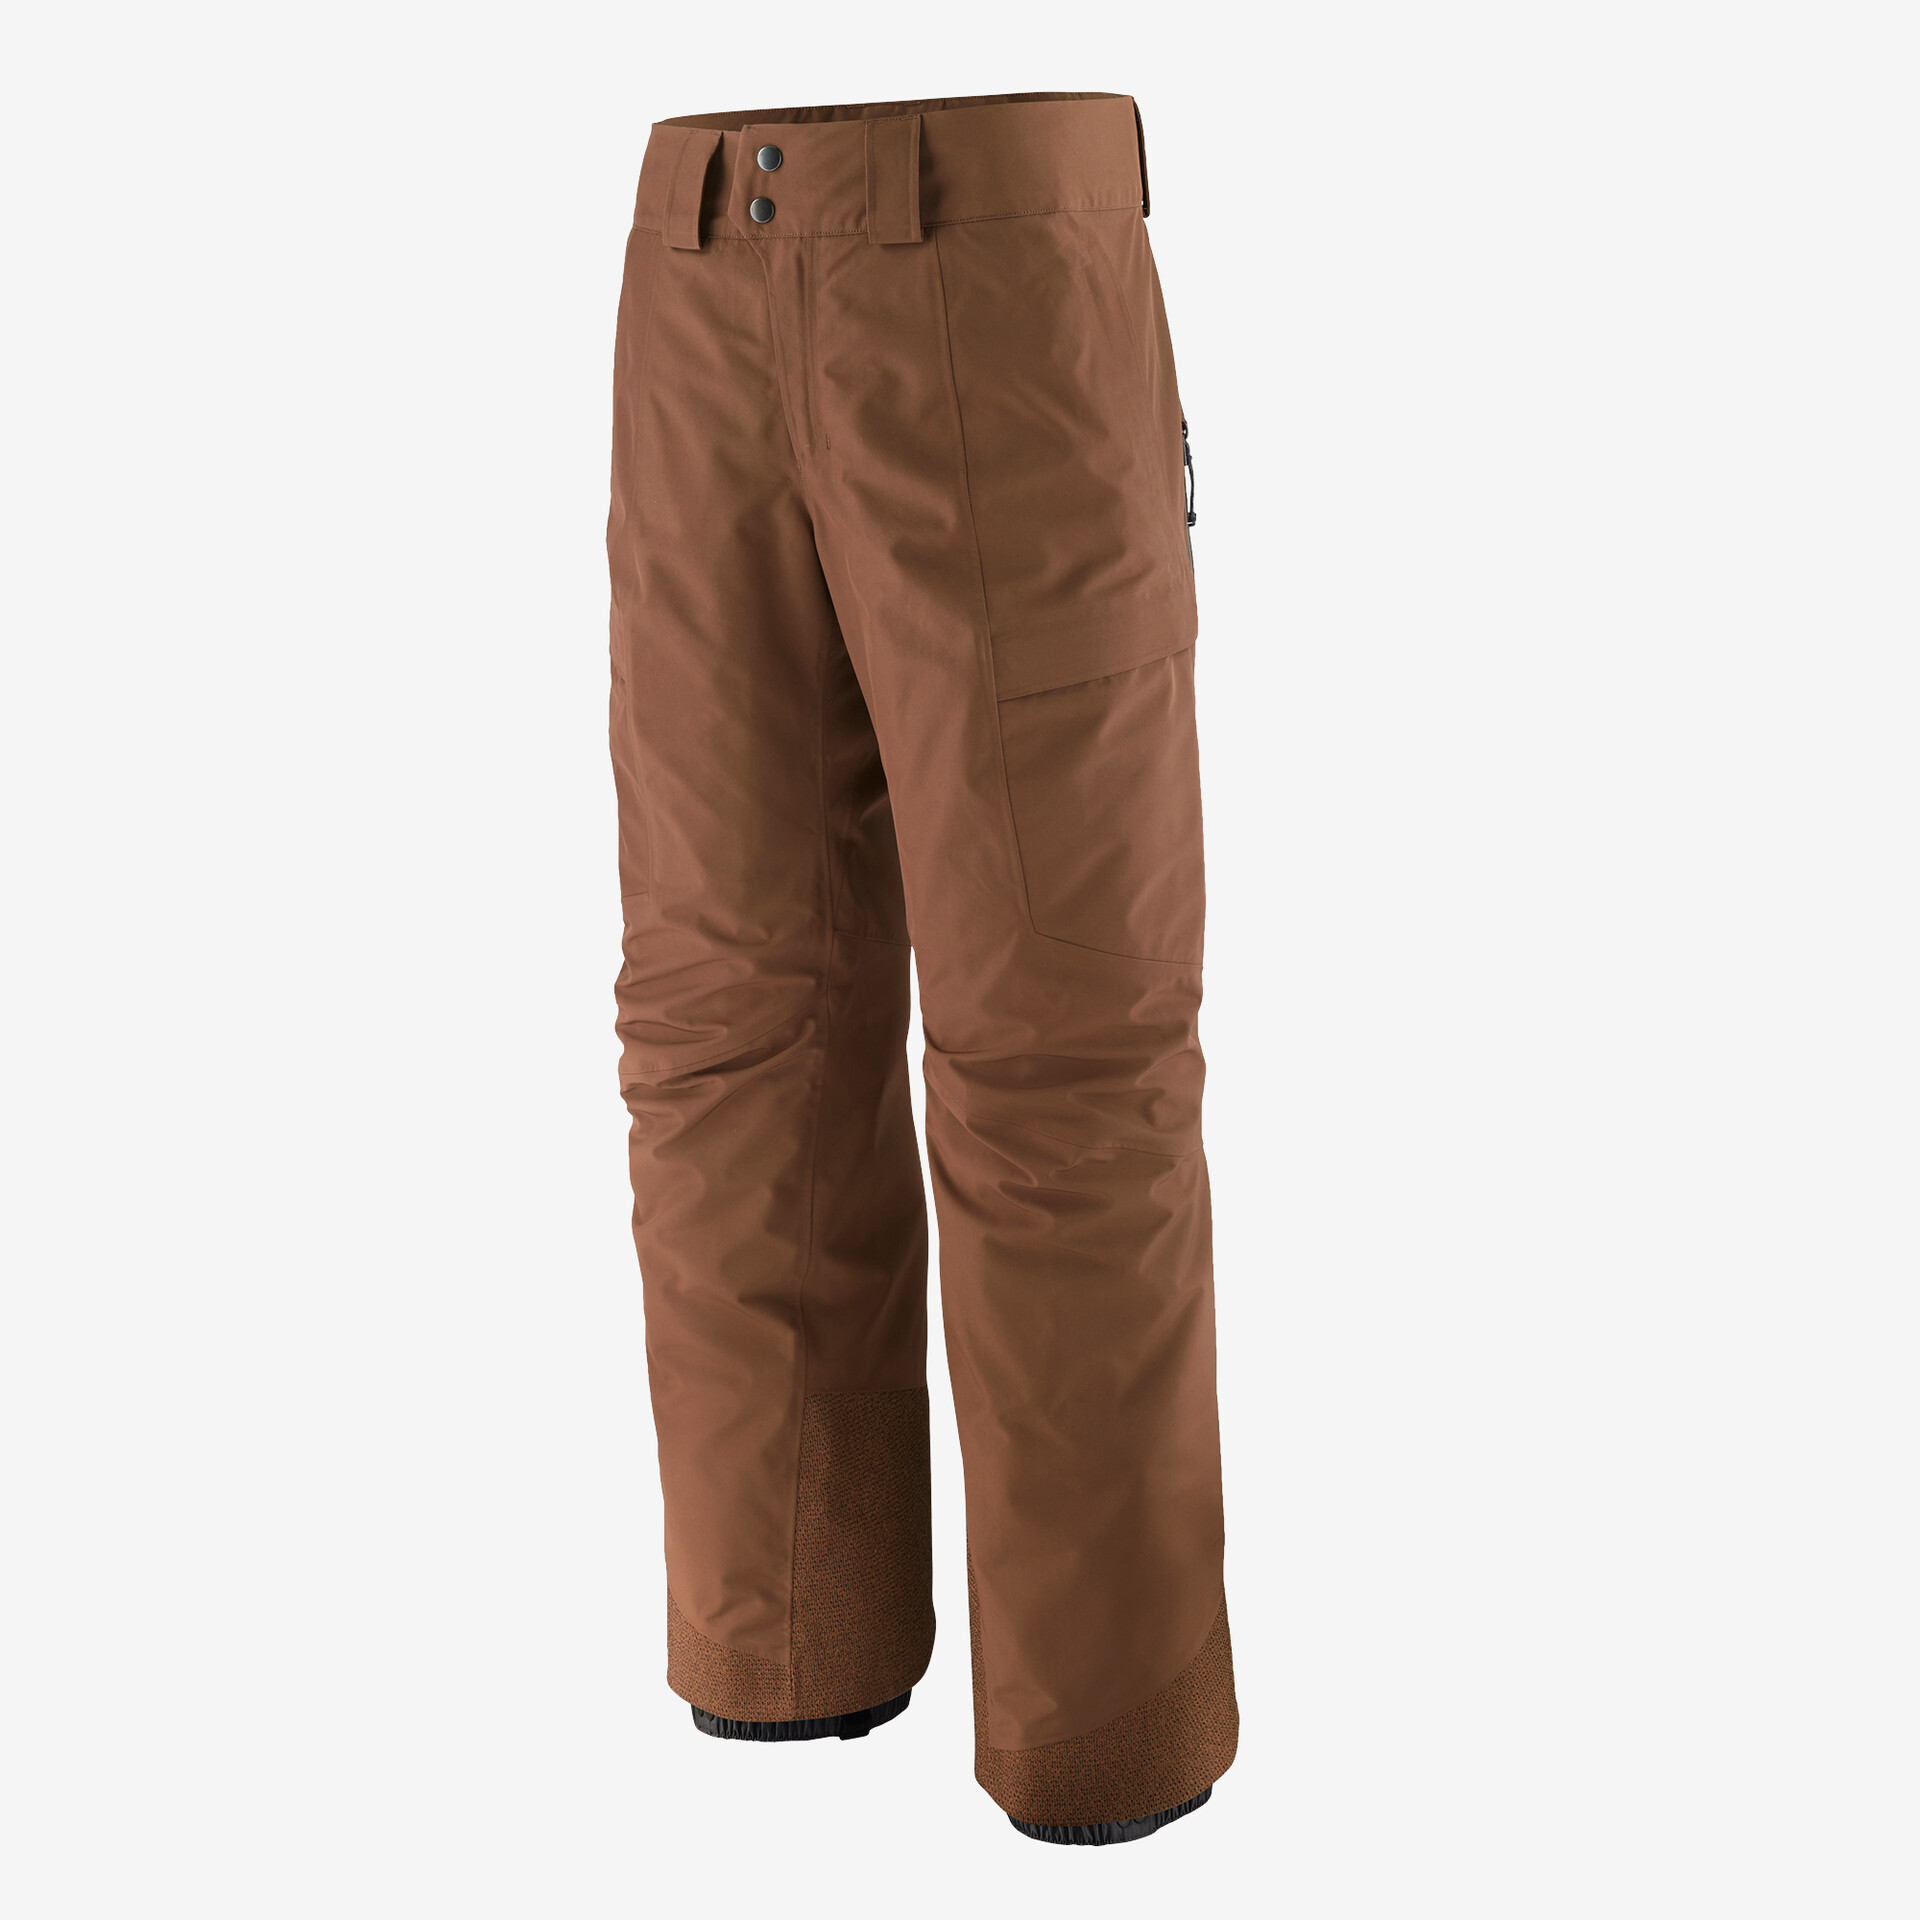 Мужские брюки Storm Shift Patagonia, мус коричневый мужские брюки storm shift patagonia мус коричневый